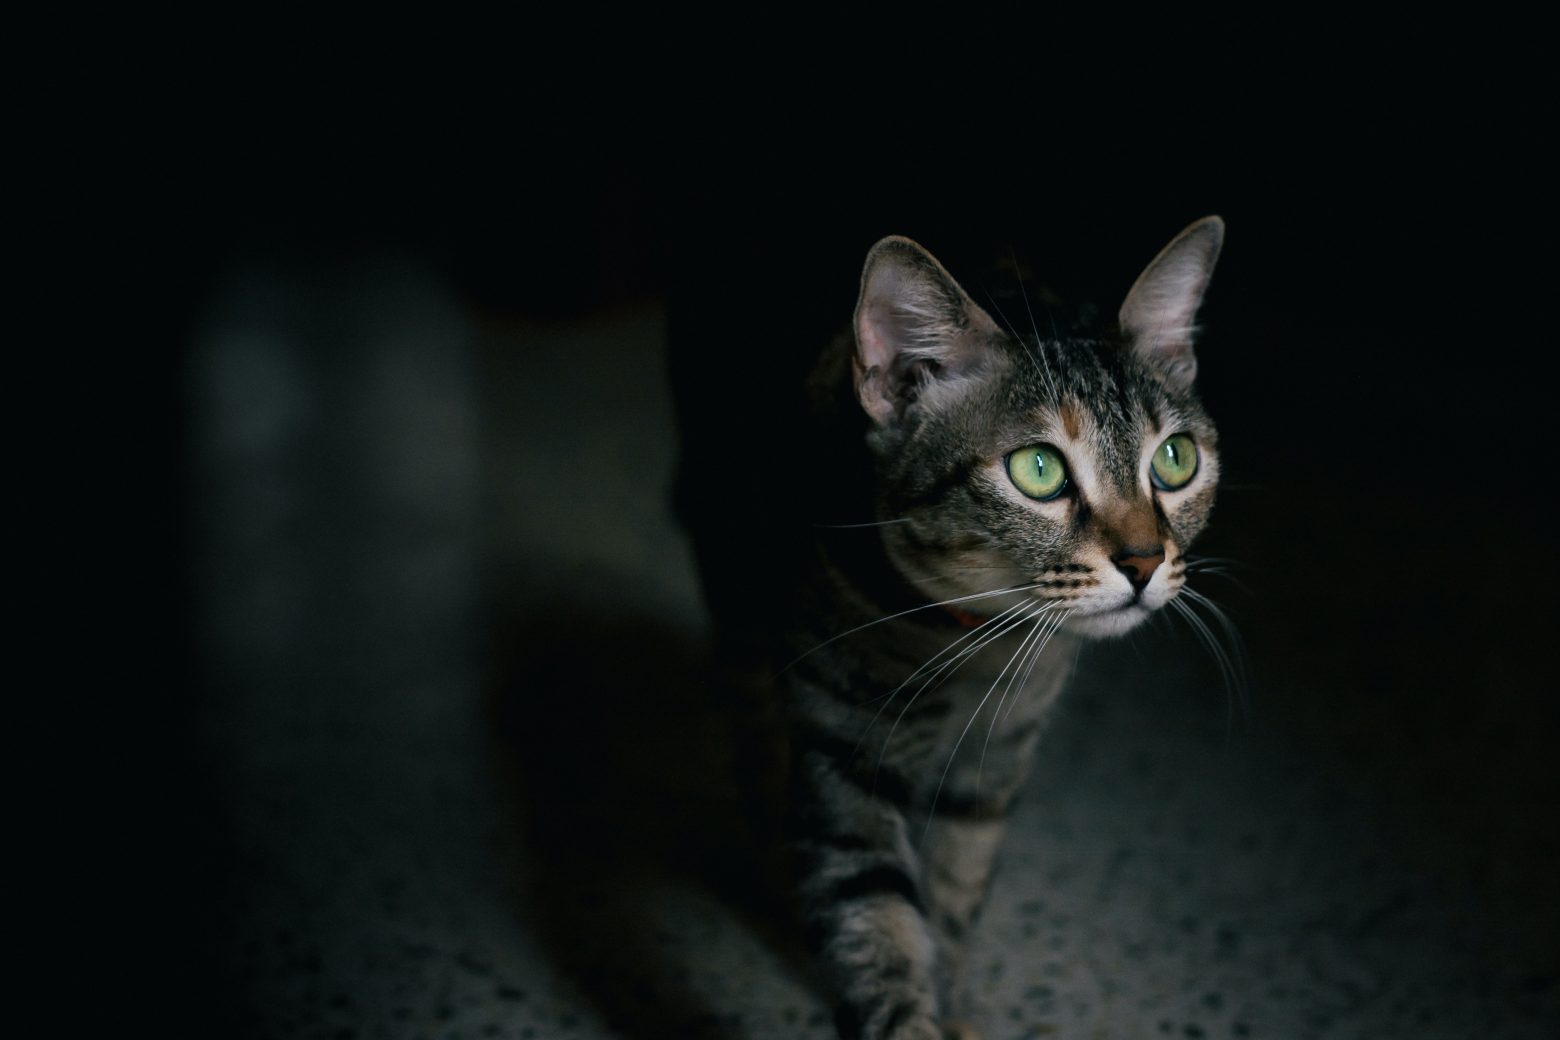 Γάτος-αλάνι επισκέπτεται καθημερινά ένα σπίτι - μέχρι που... μετακομίζει με το «έτσι θέλω» [Βίντεο]